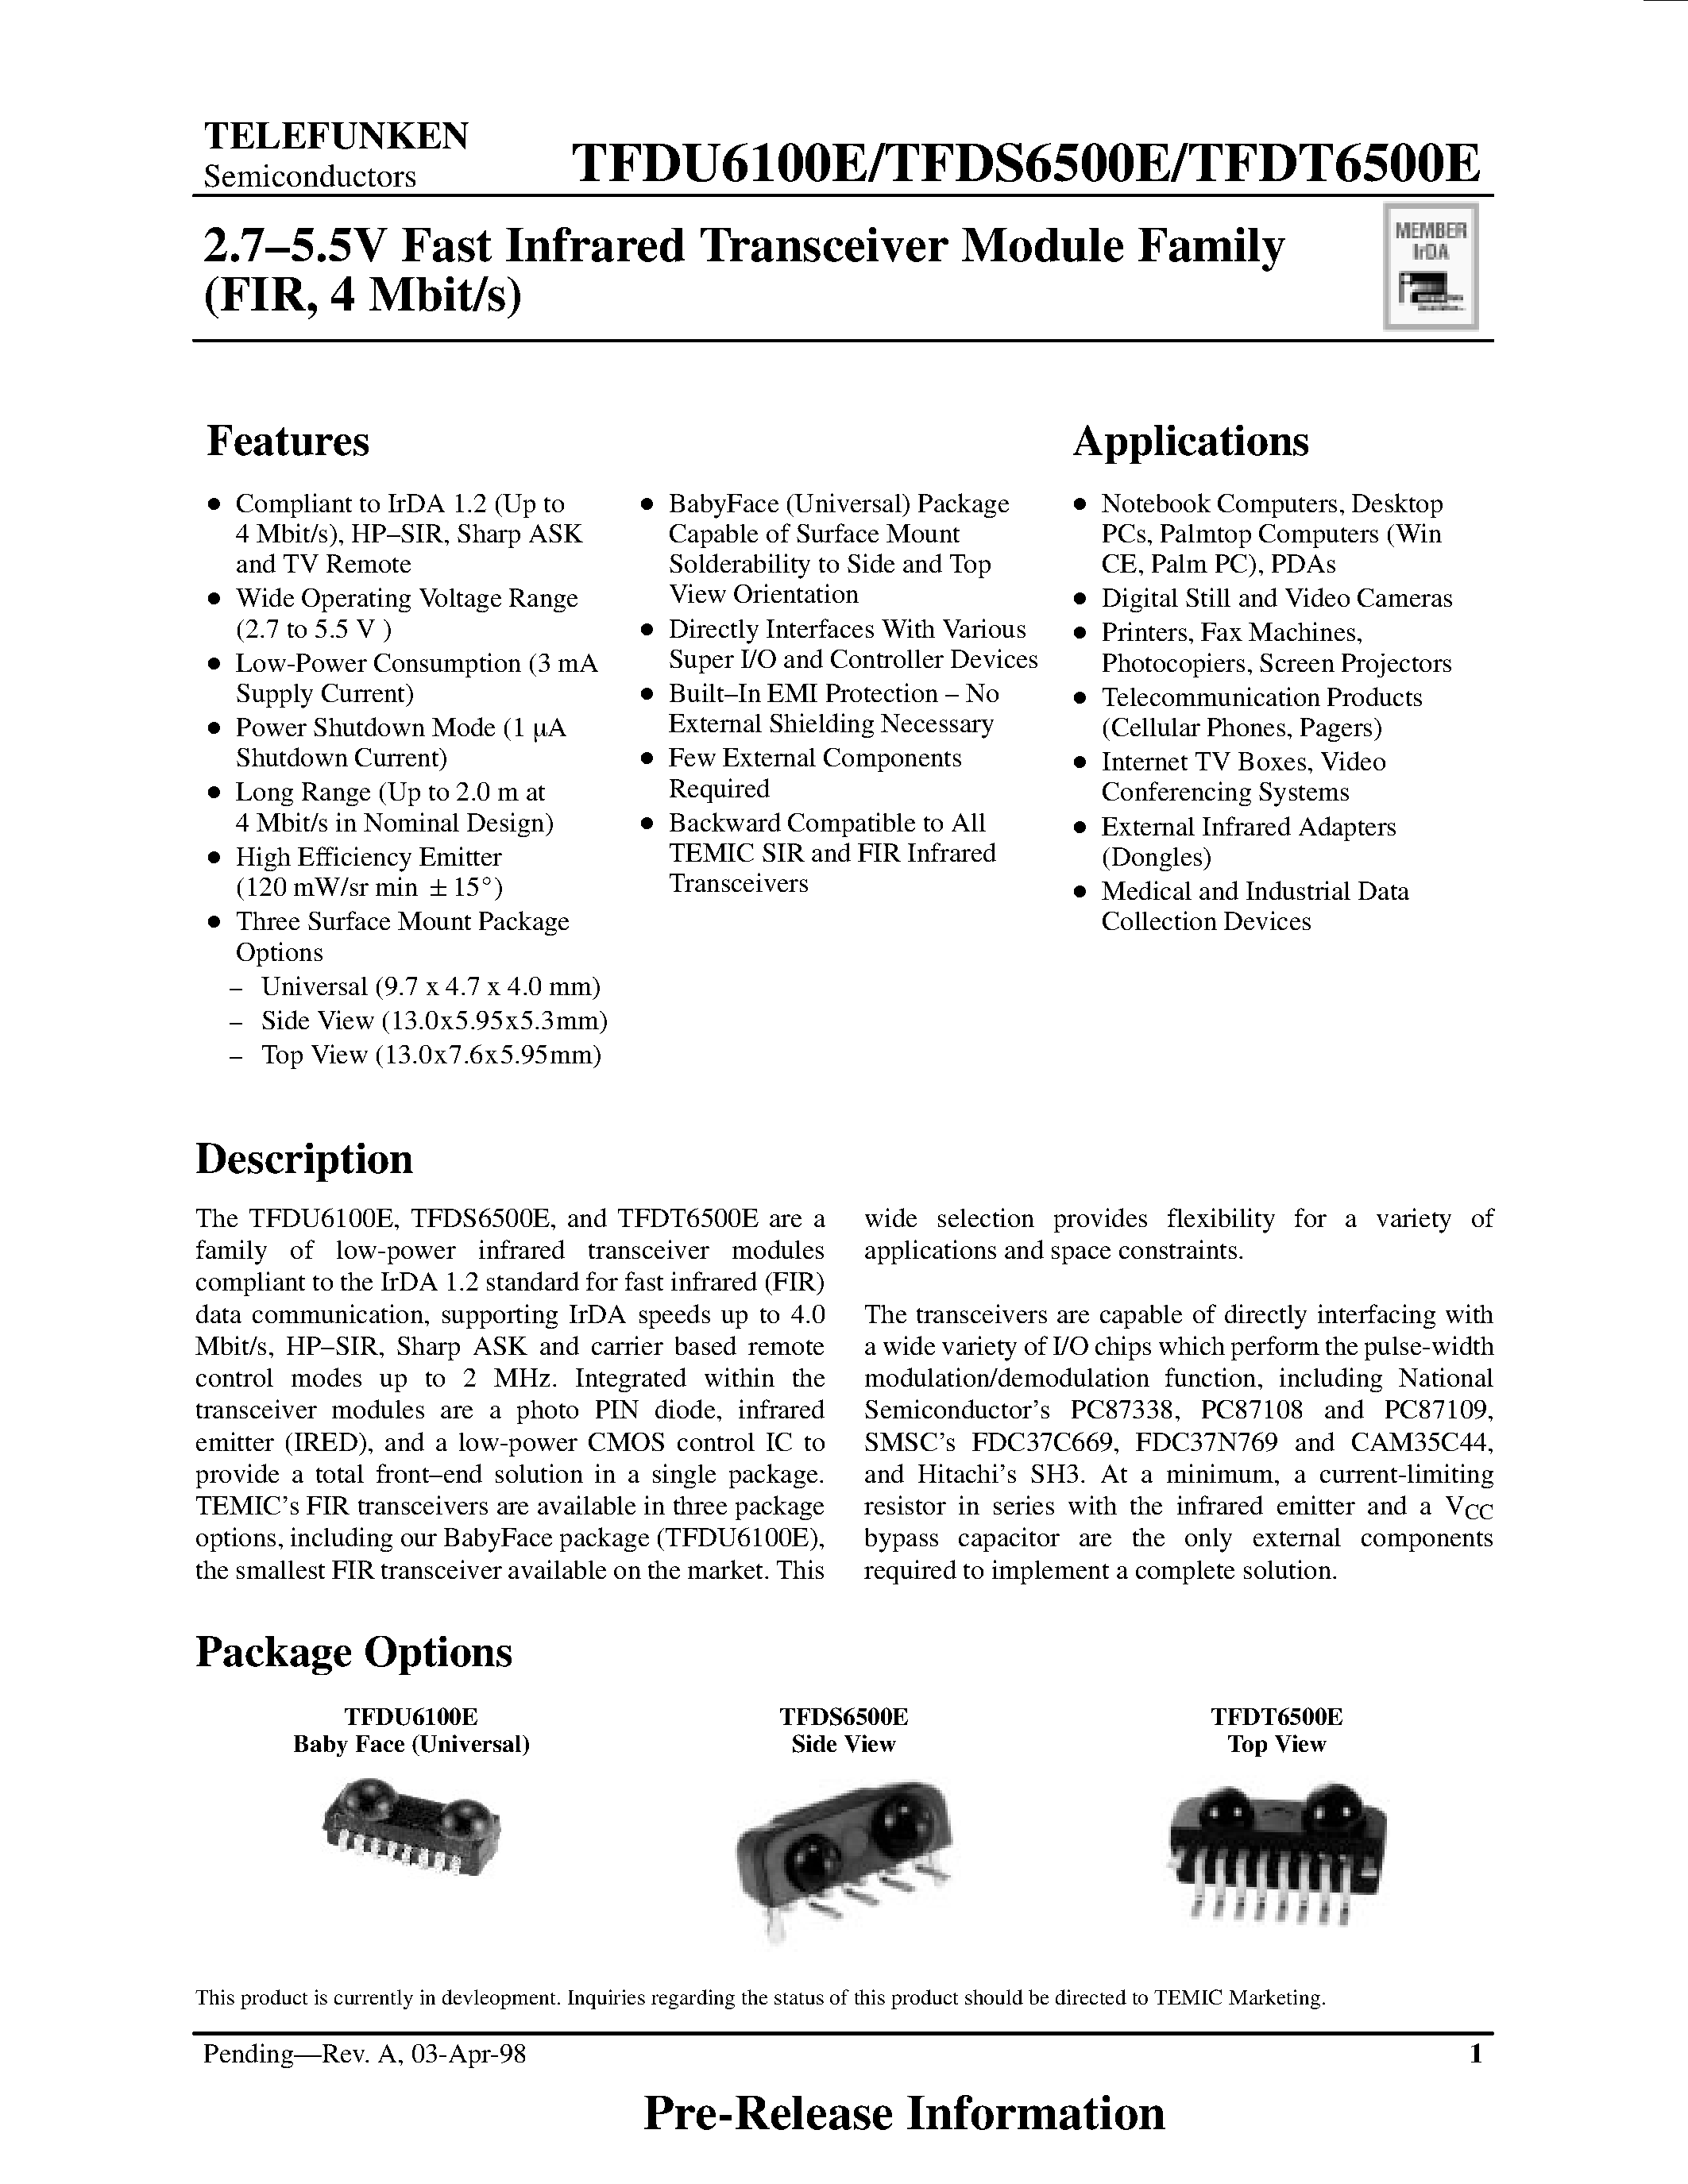 Datasheet TFDT6500E - 2.7-5.5V Fast Infrared Transceiver Module Family page 1